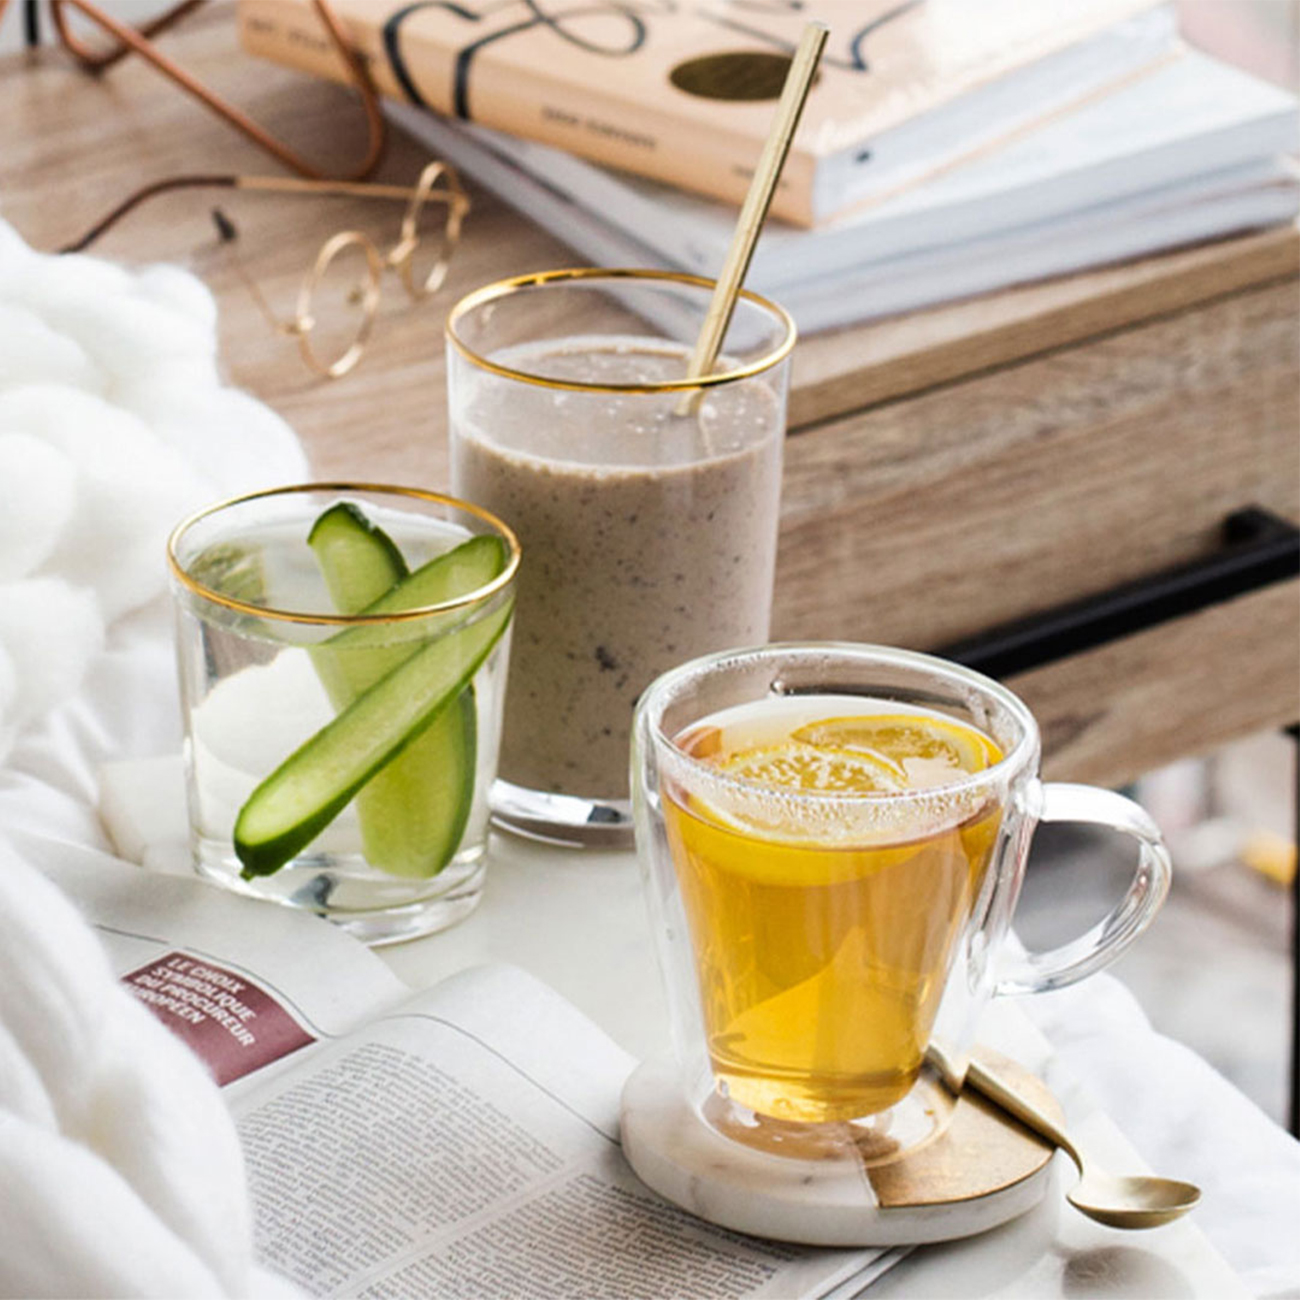 Healthy breakfast Formula 1 shake, herbal and aloe beverages in bed.